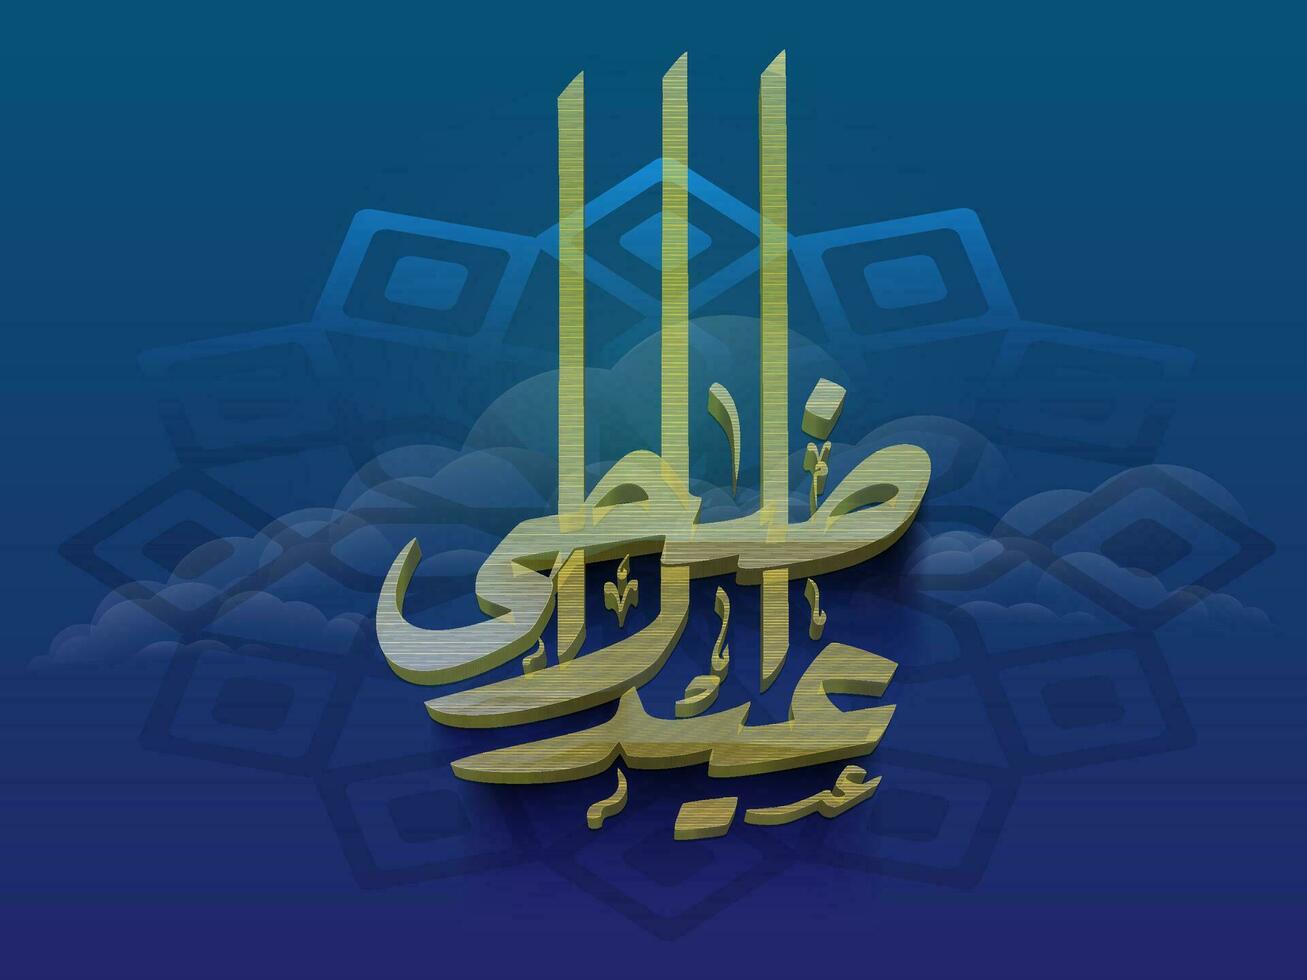 3d dourado árabe caligrafia do eid-ul-adha Mubarak em azul nublado fundo para islâmico festival conceito. vetor